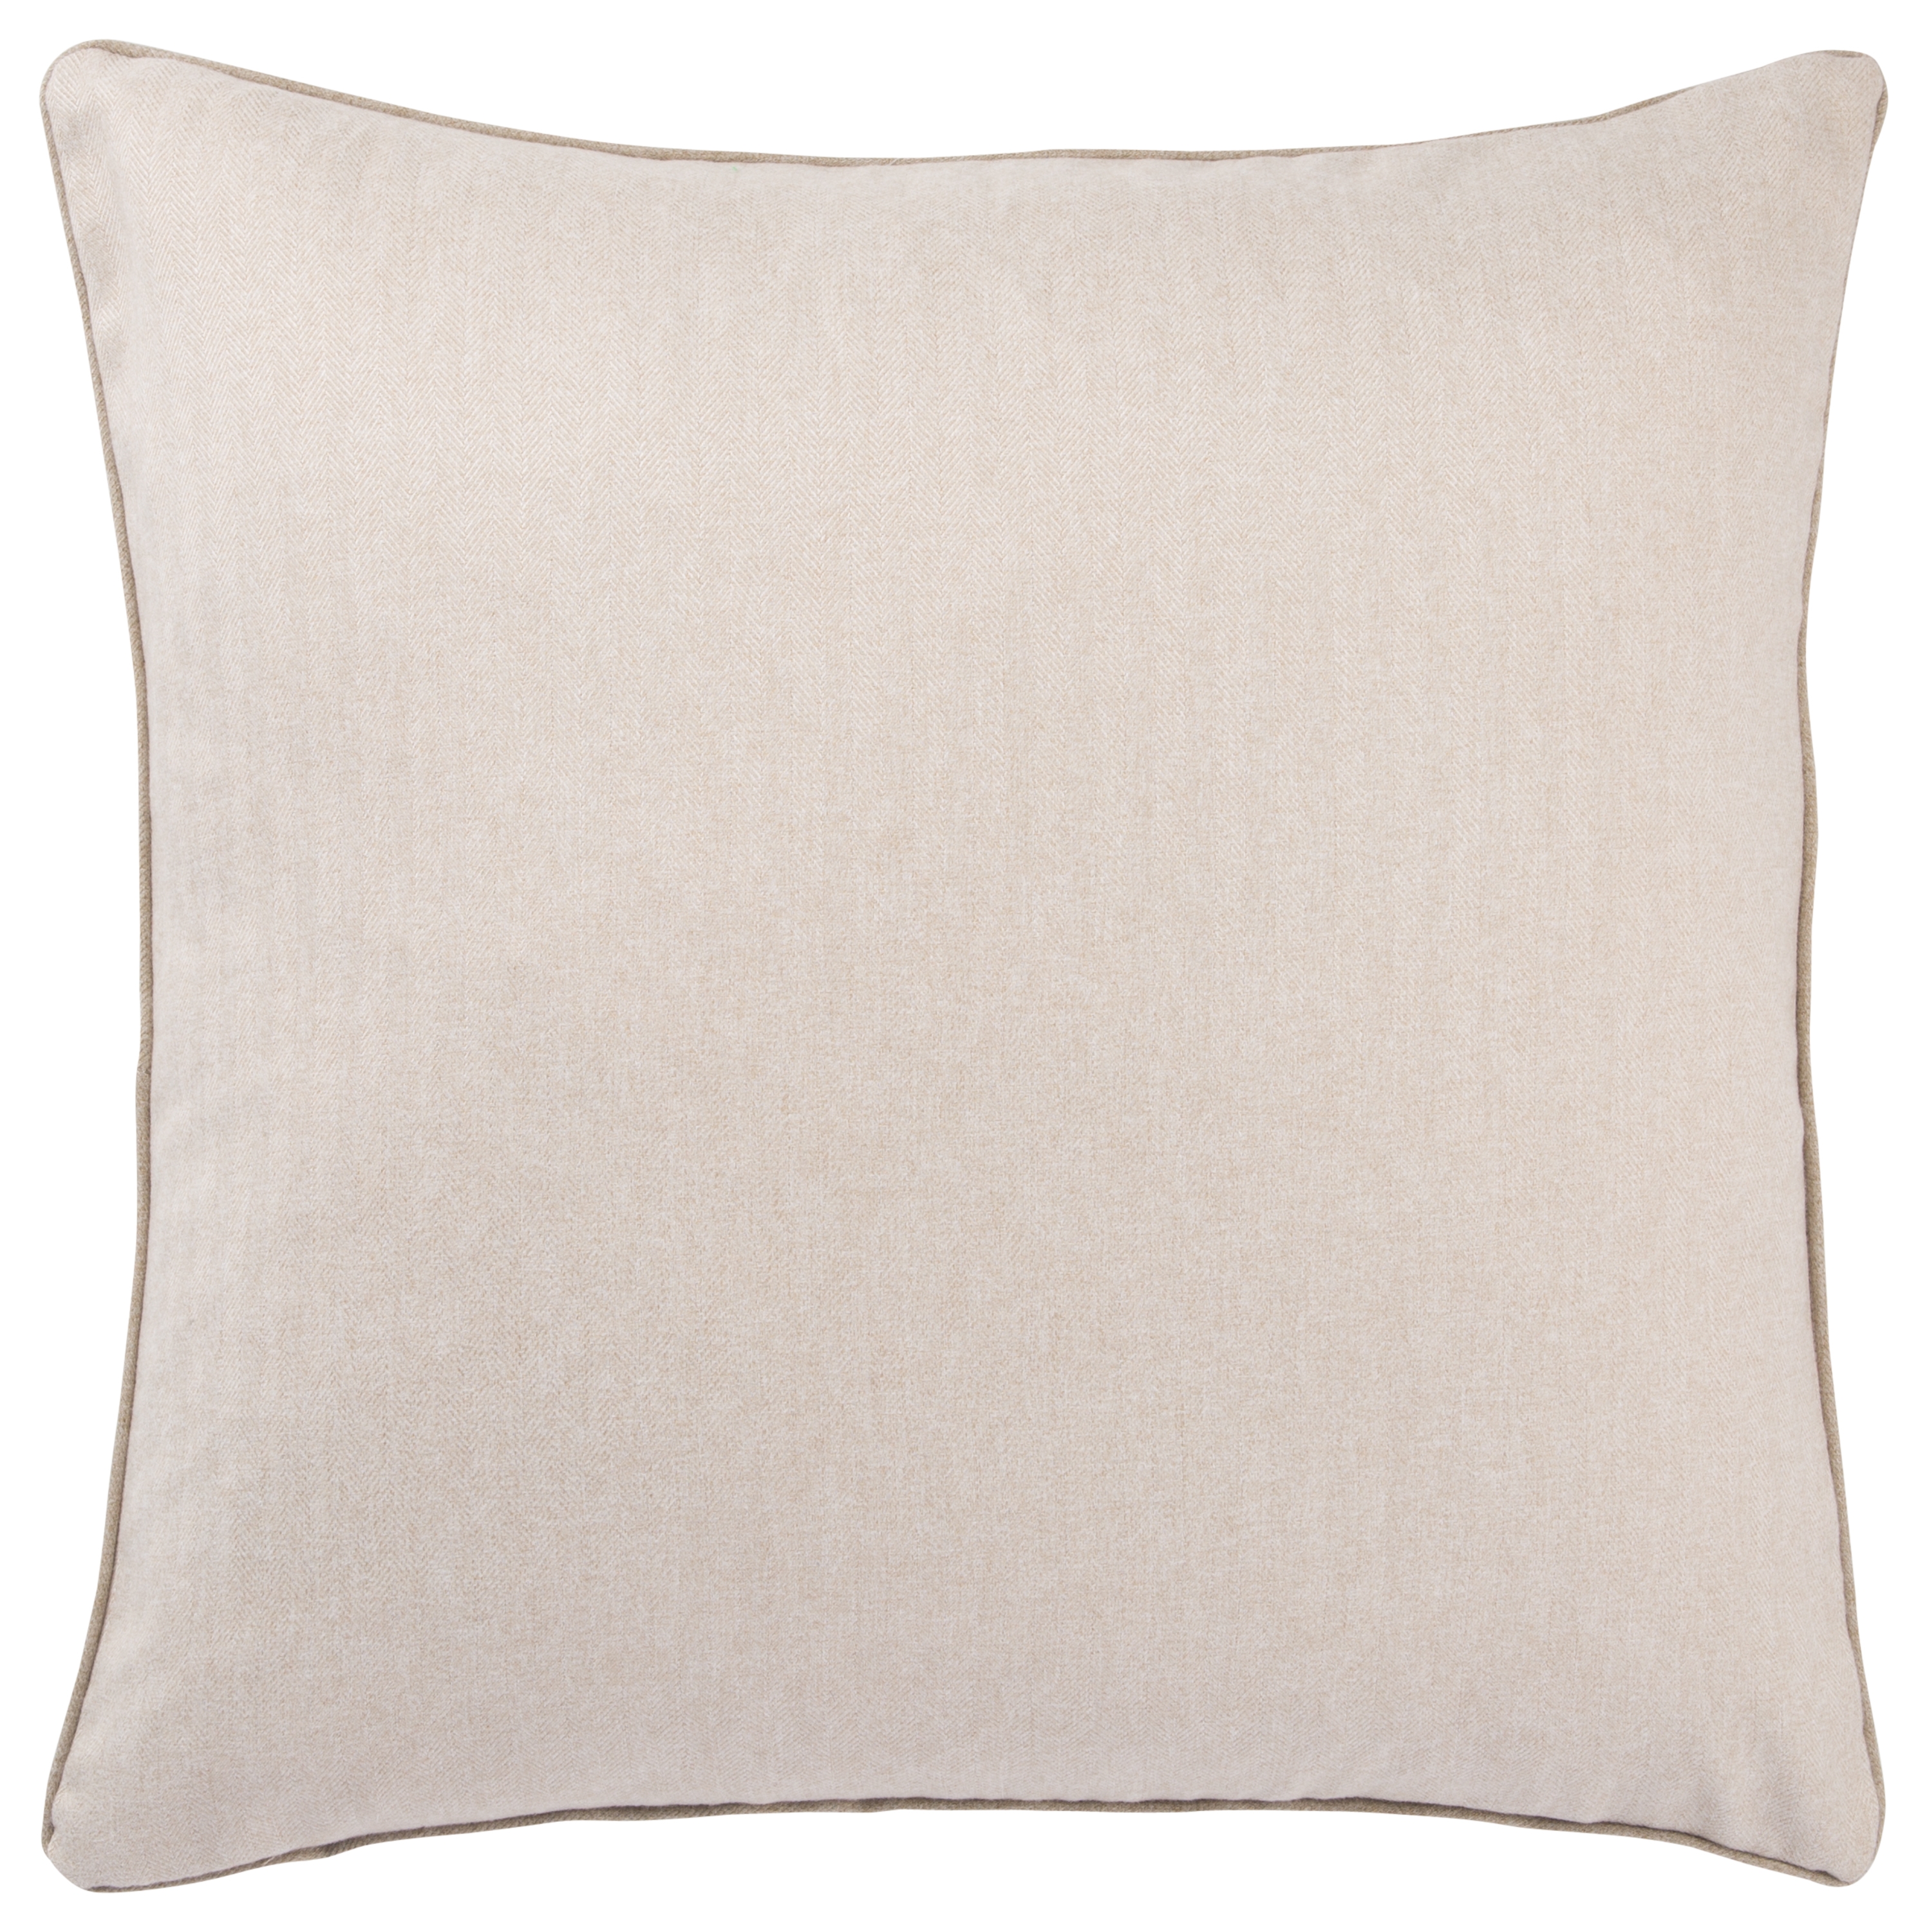 Design (US) Cream 22"X22" Pillow - Image 1